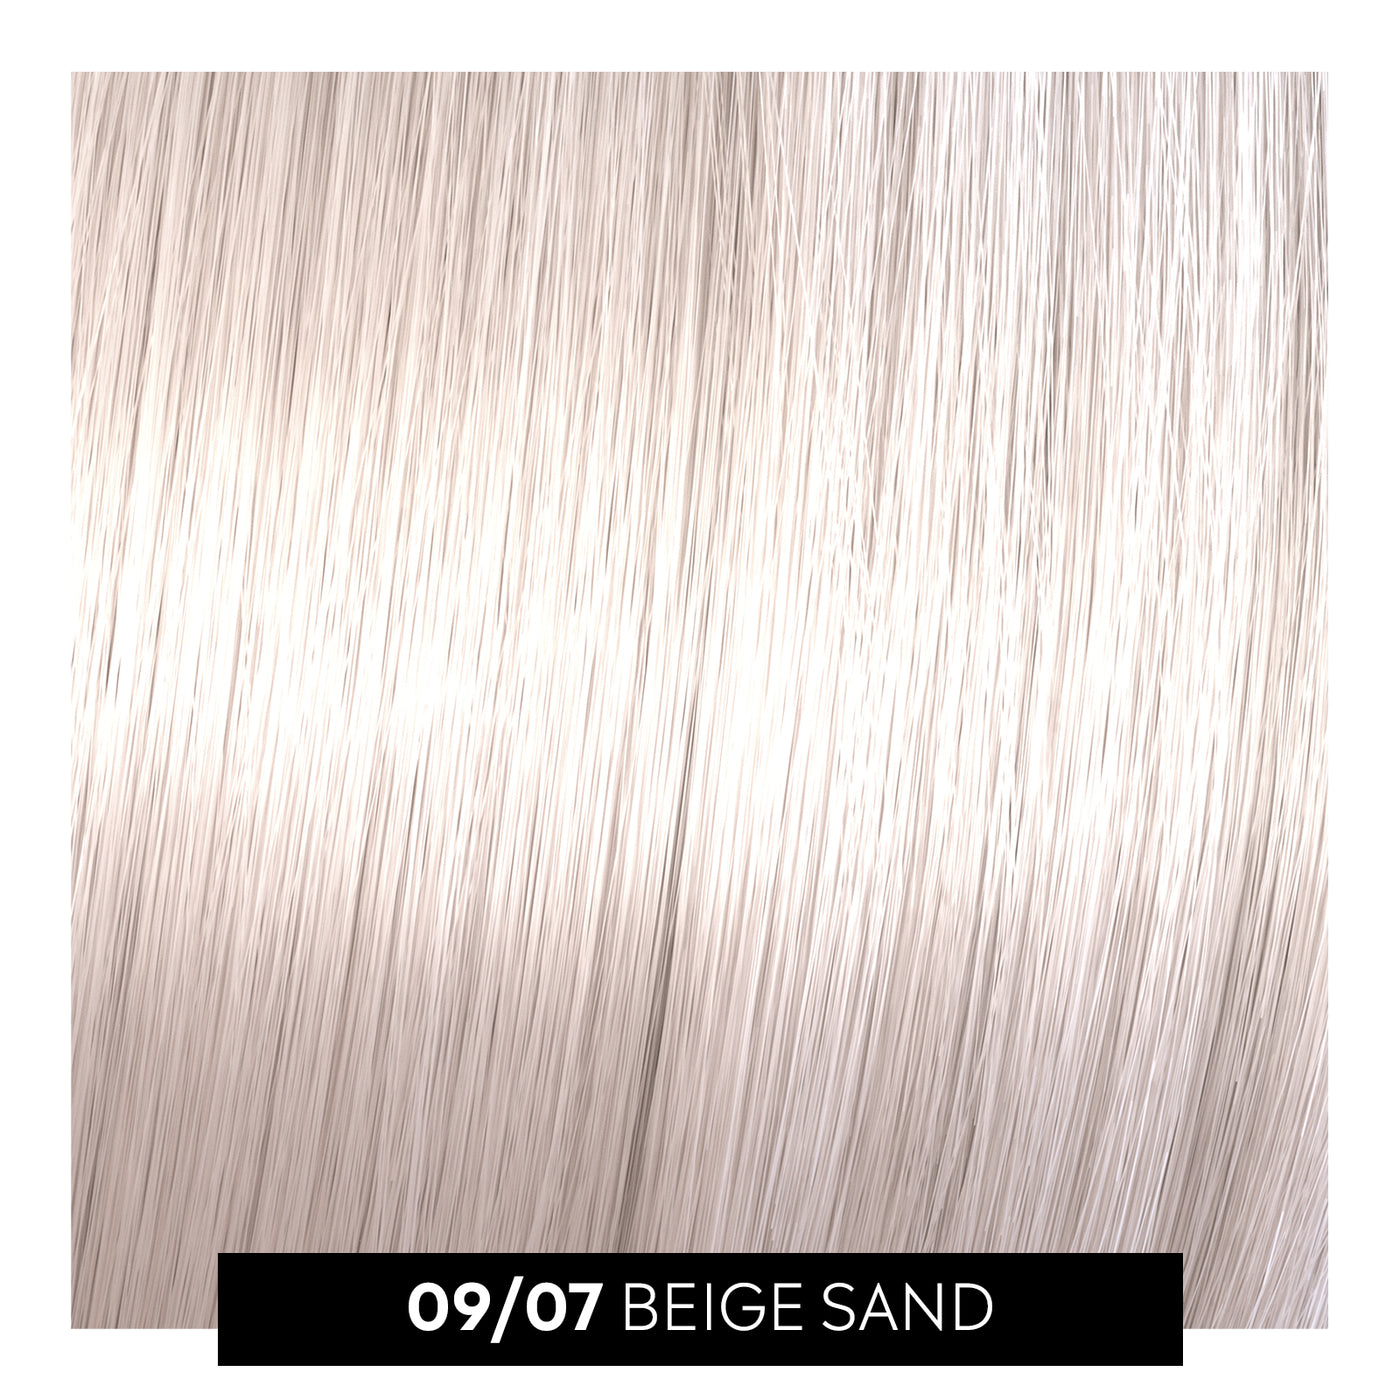 09/07 beige sand